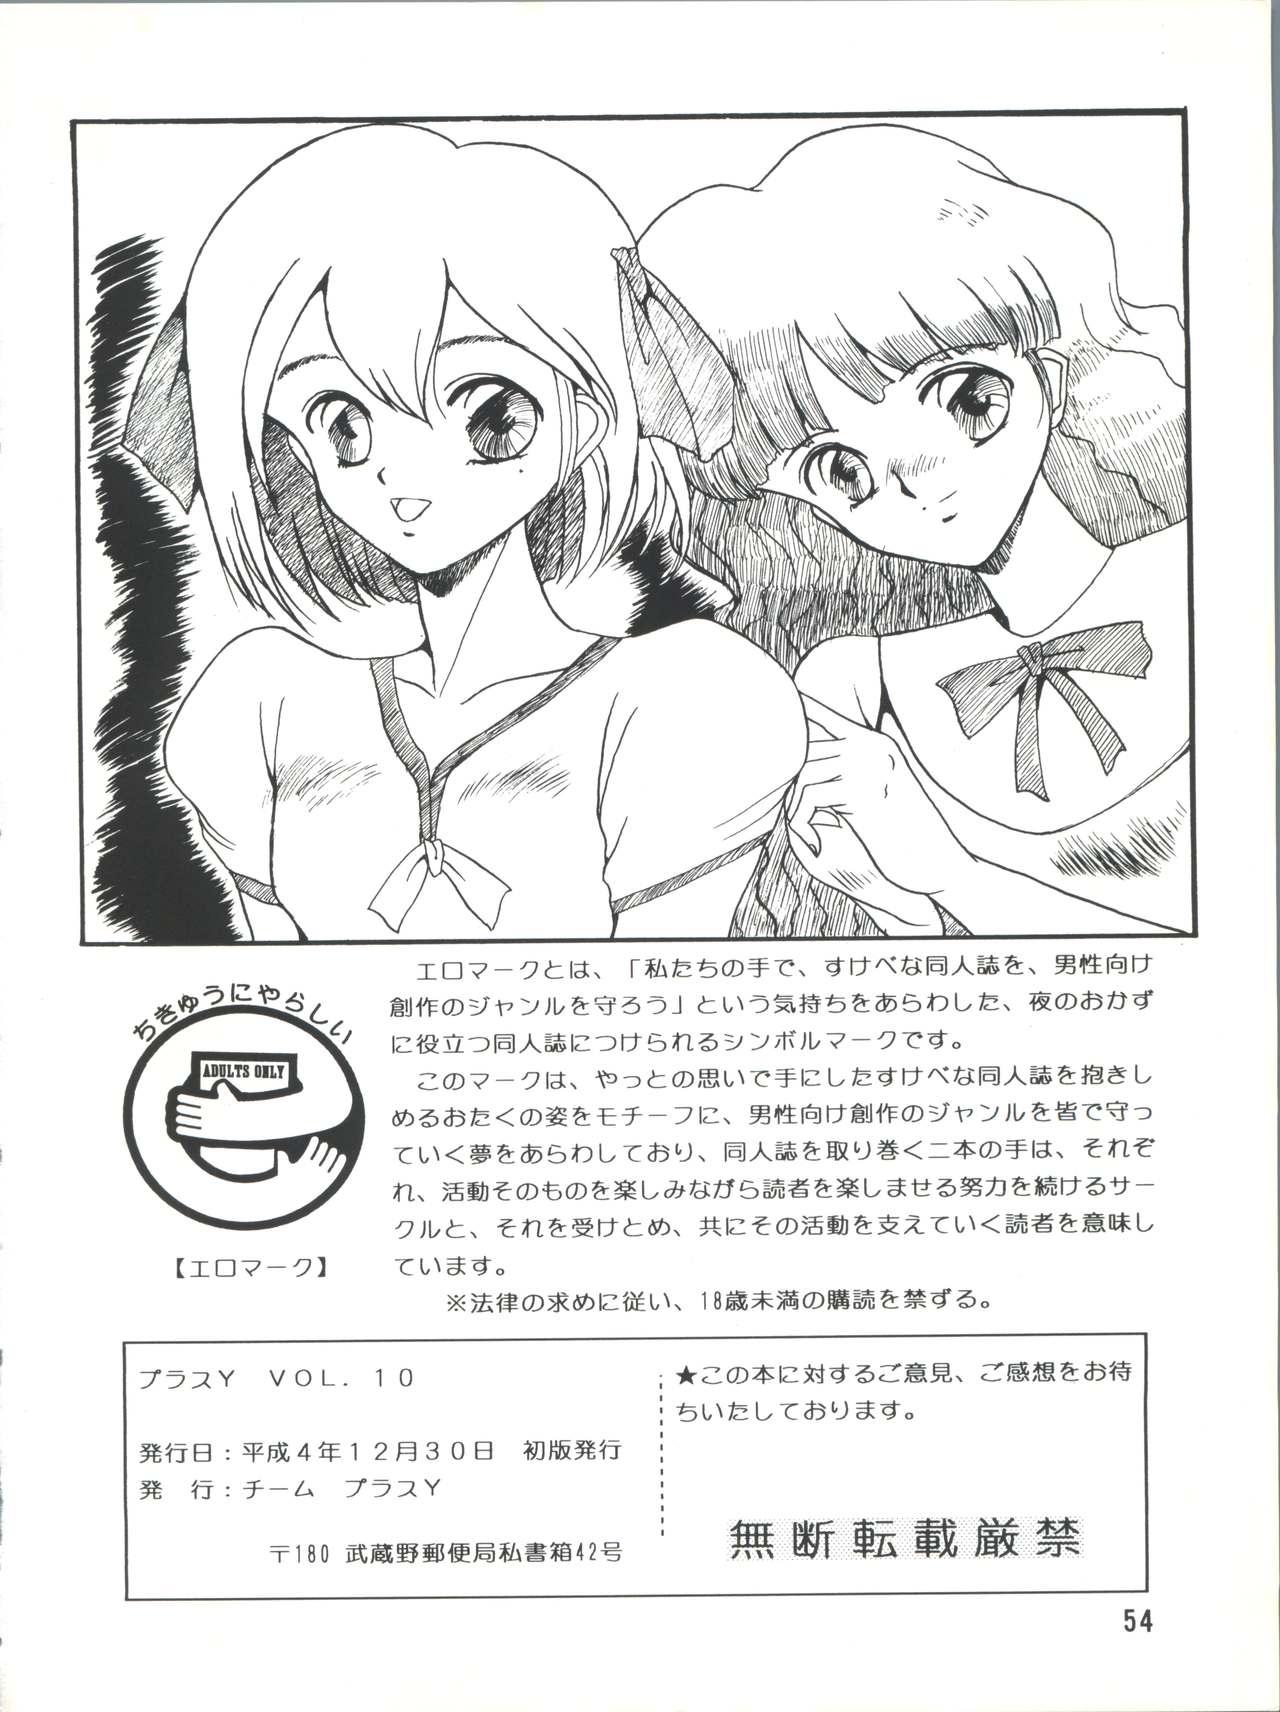 Teens PLUS-Y Vol.10 - Sailor moon Dragon quest v Sex Party - Page 54